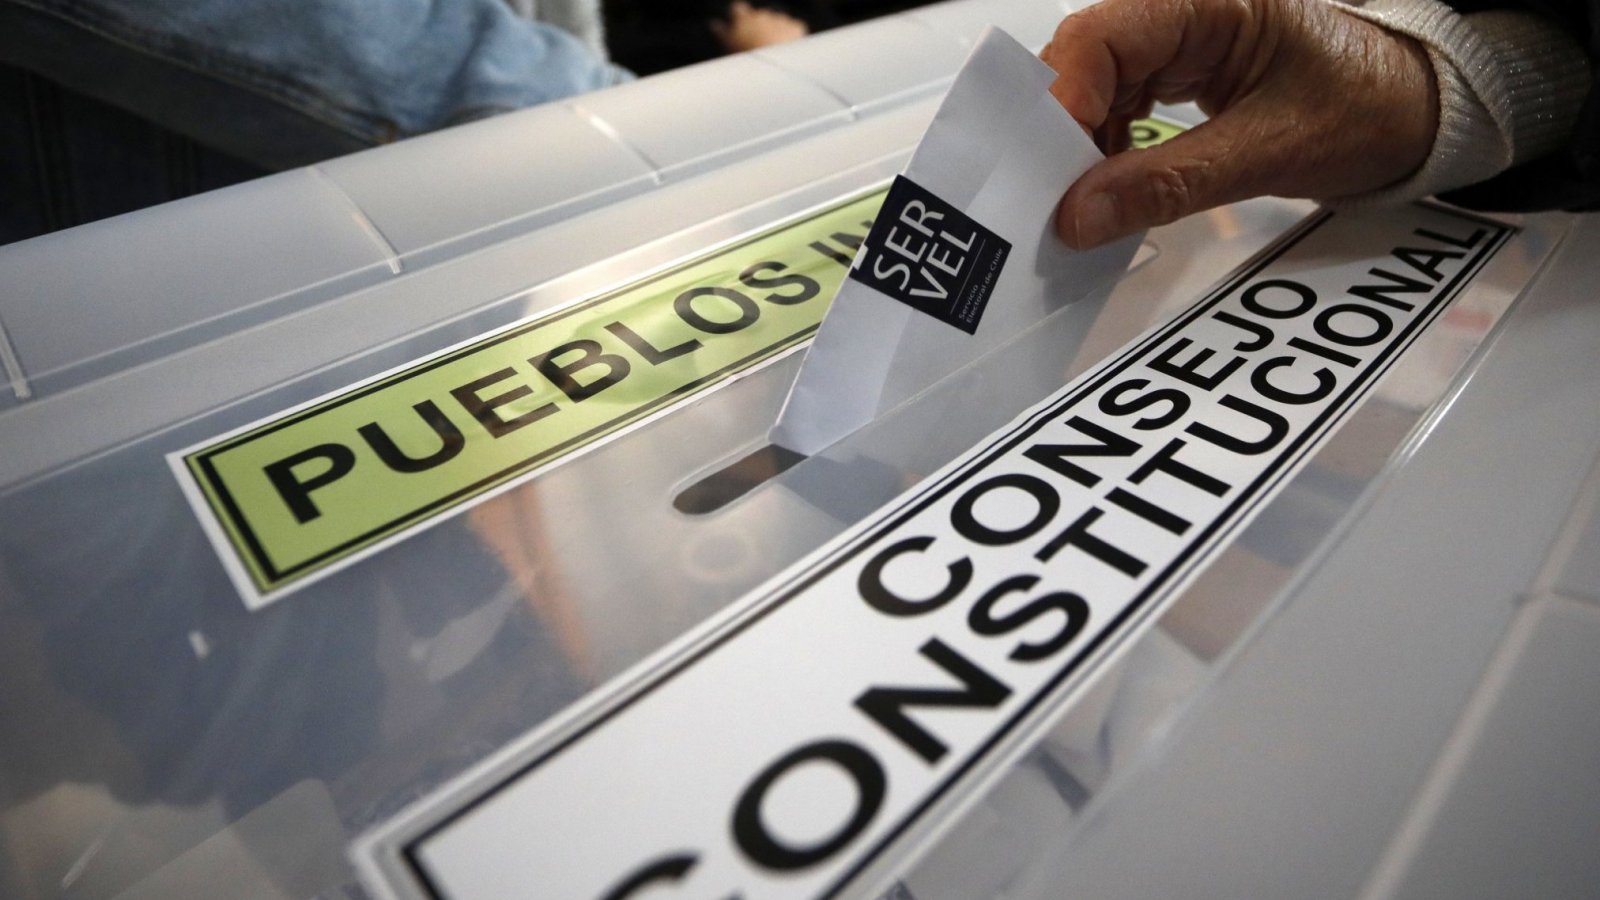 Mano ingresando voto en una urna electoral, en donde se lee "Consejo Constitucional".